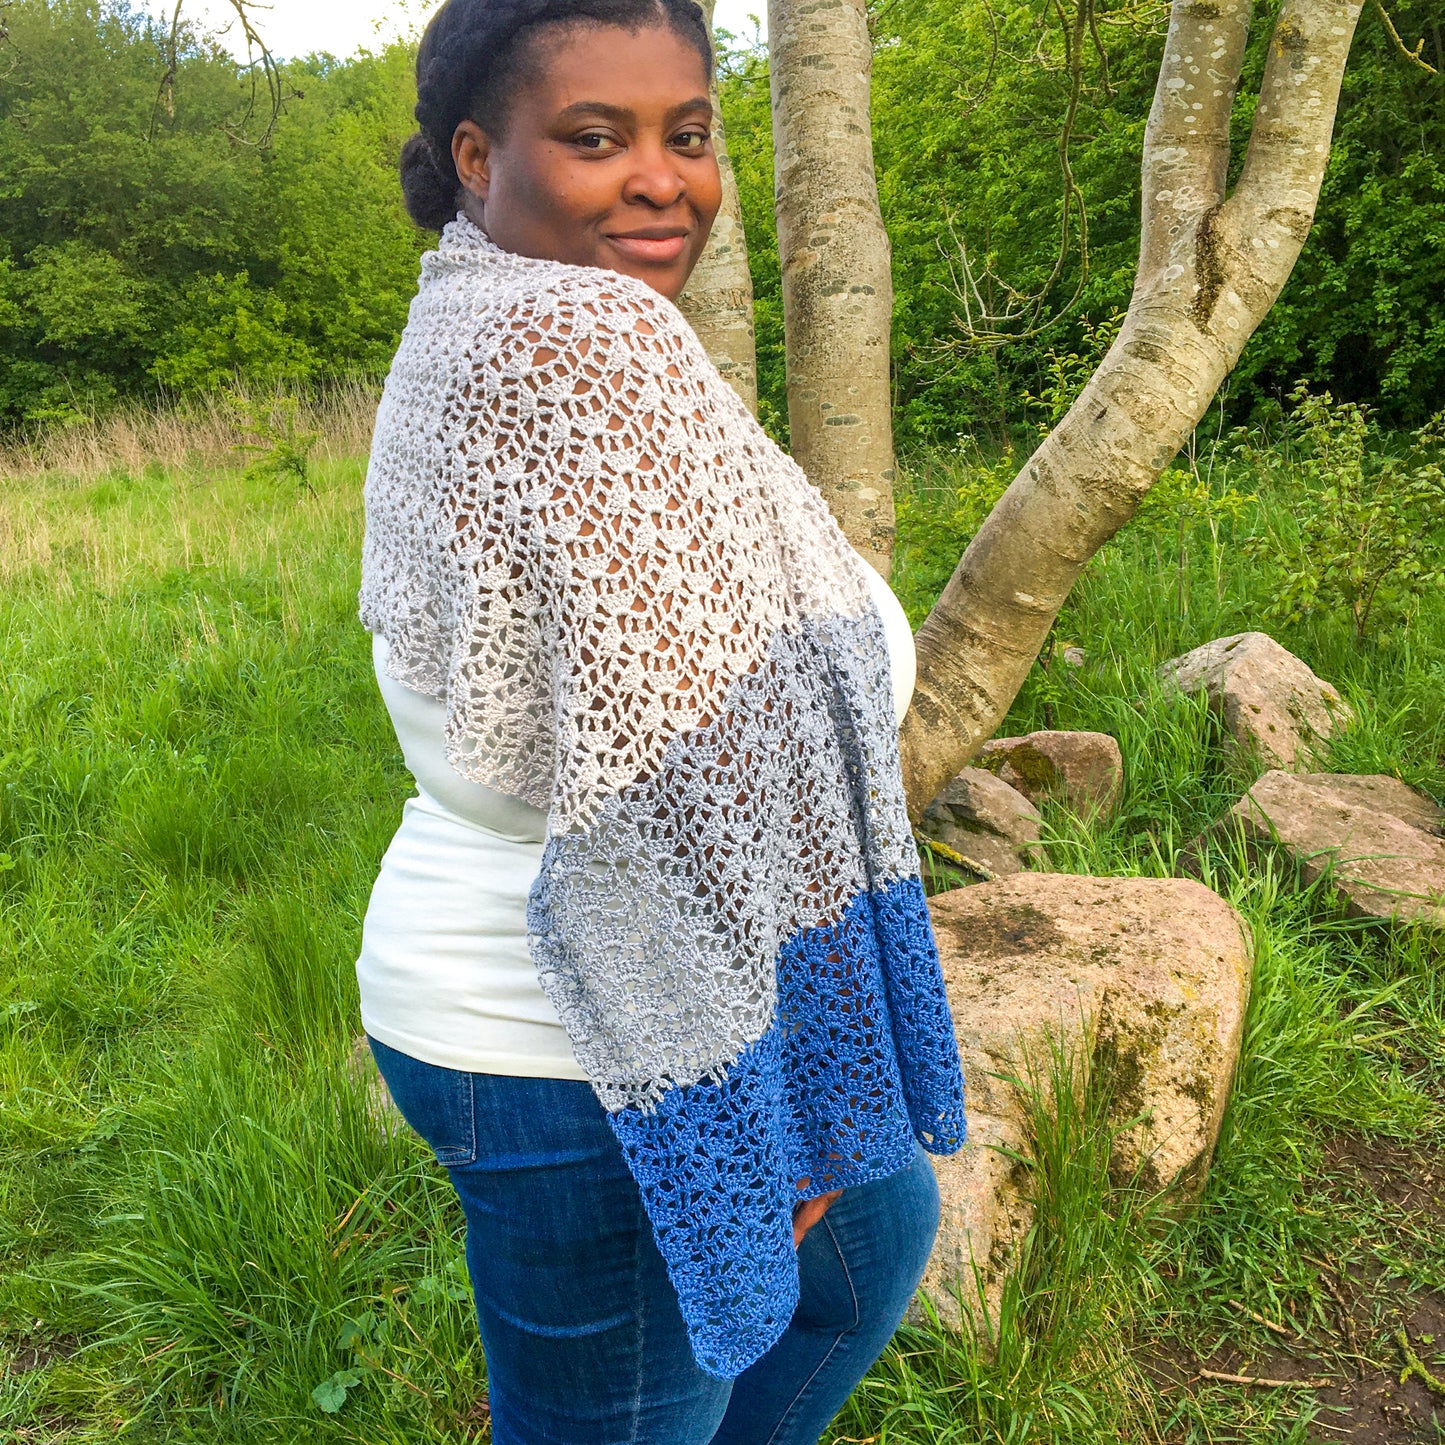 Moonflower (Blanket) Scarf Pattern (Crochet)